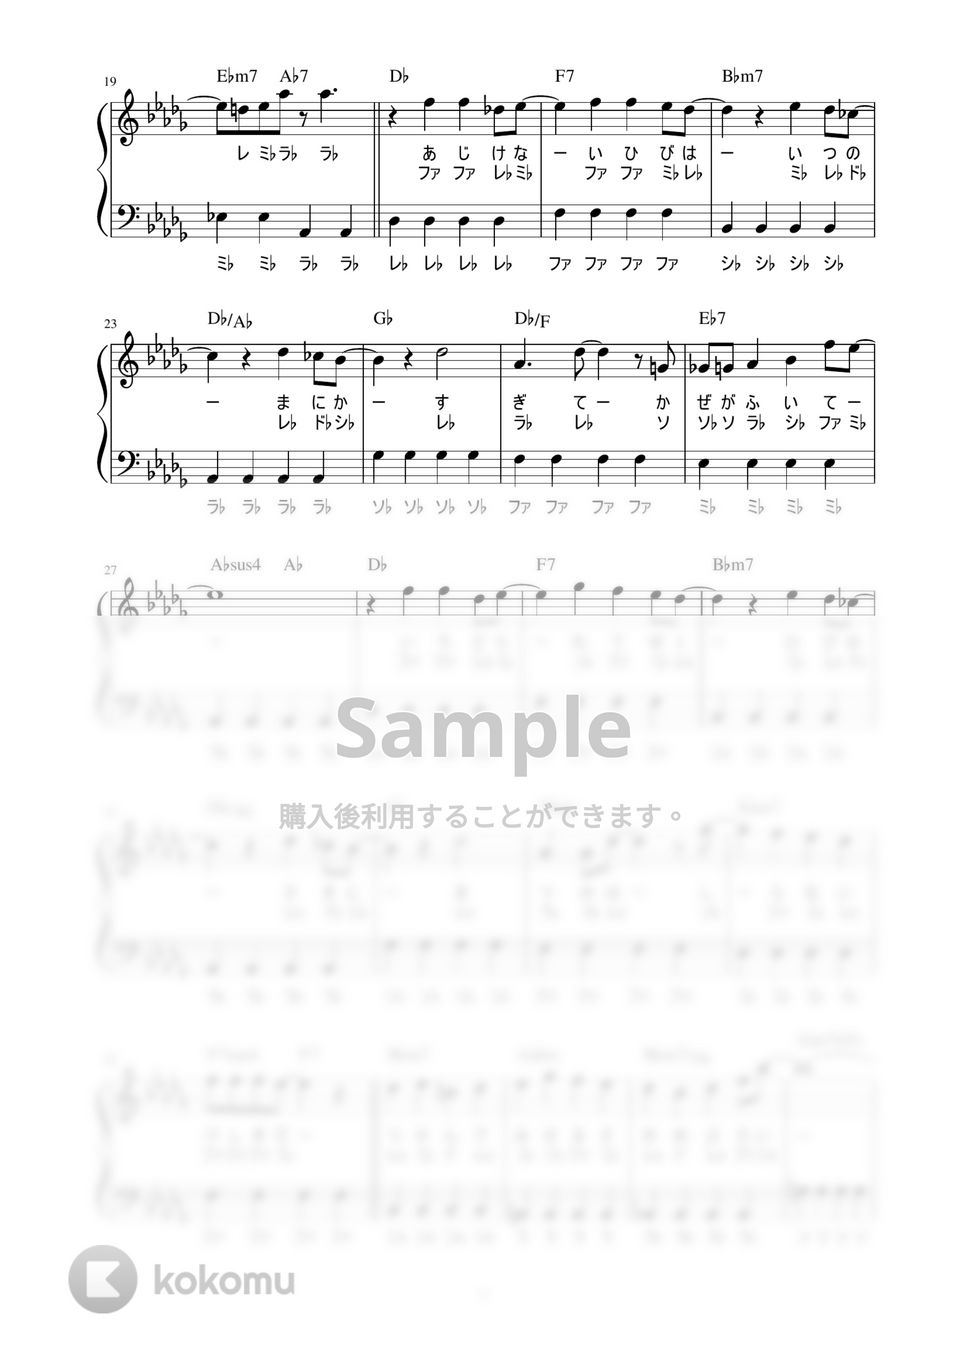 King & Prince - なにもの (かんたん / 歌詞付き / ドレミ付き / 初心者) by piano.tokyo